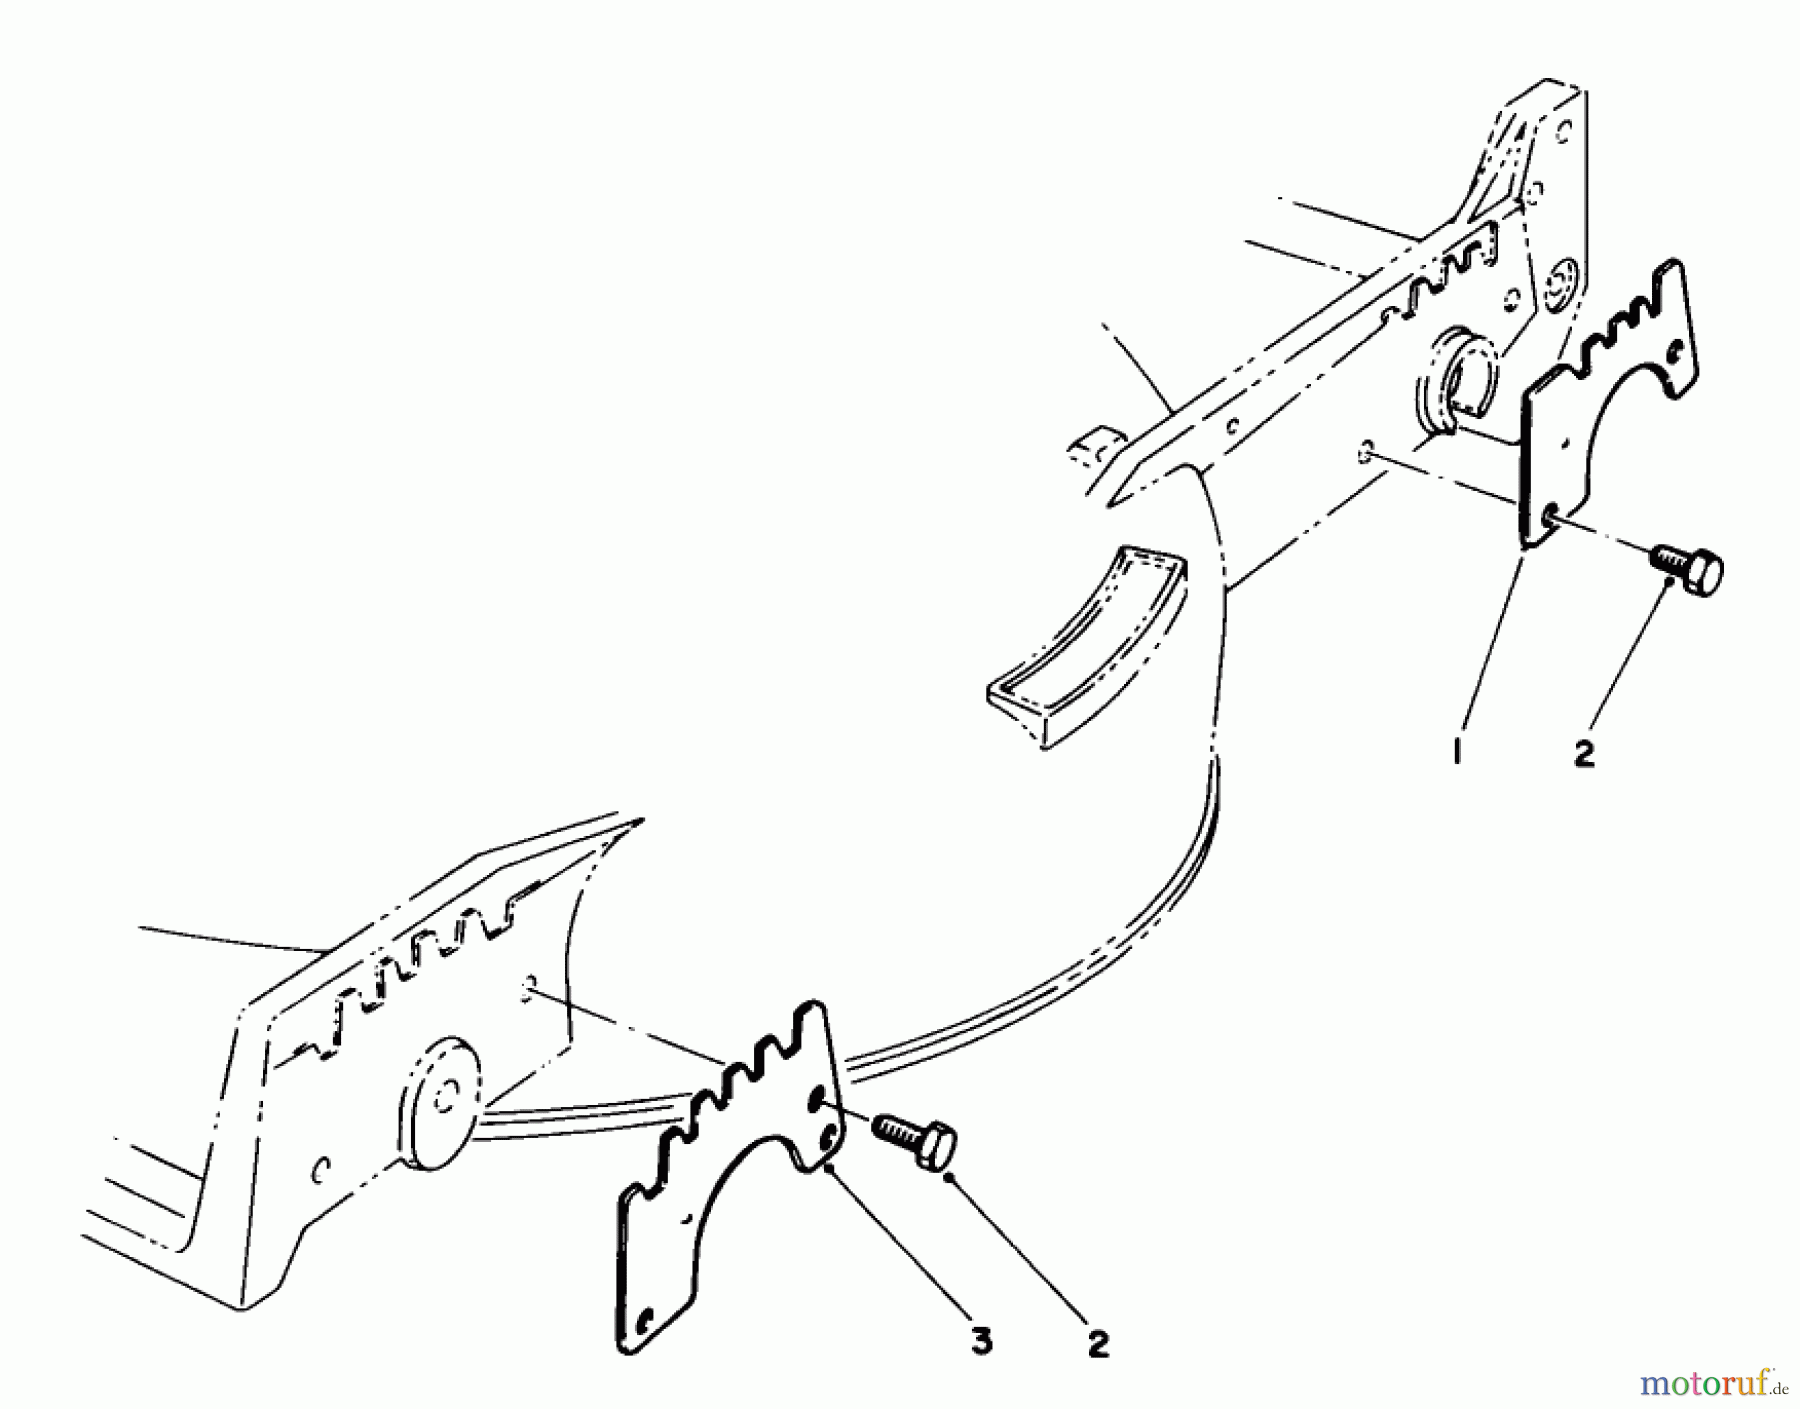  Toro Neu Mowers, Walk-Behind Seite 1 20218 - Toro Lawnmower, 1991 (1000001-1999999) WEAR PLATE MODEL NO. 49-4080 (OPTIONAL)